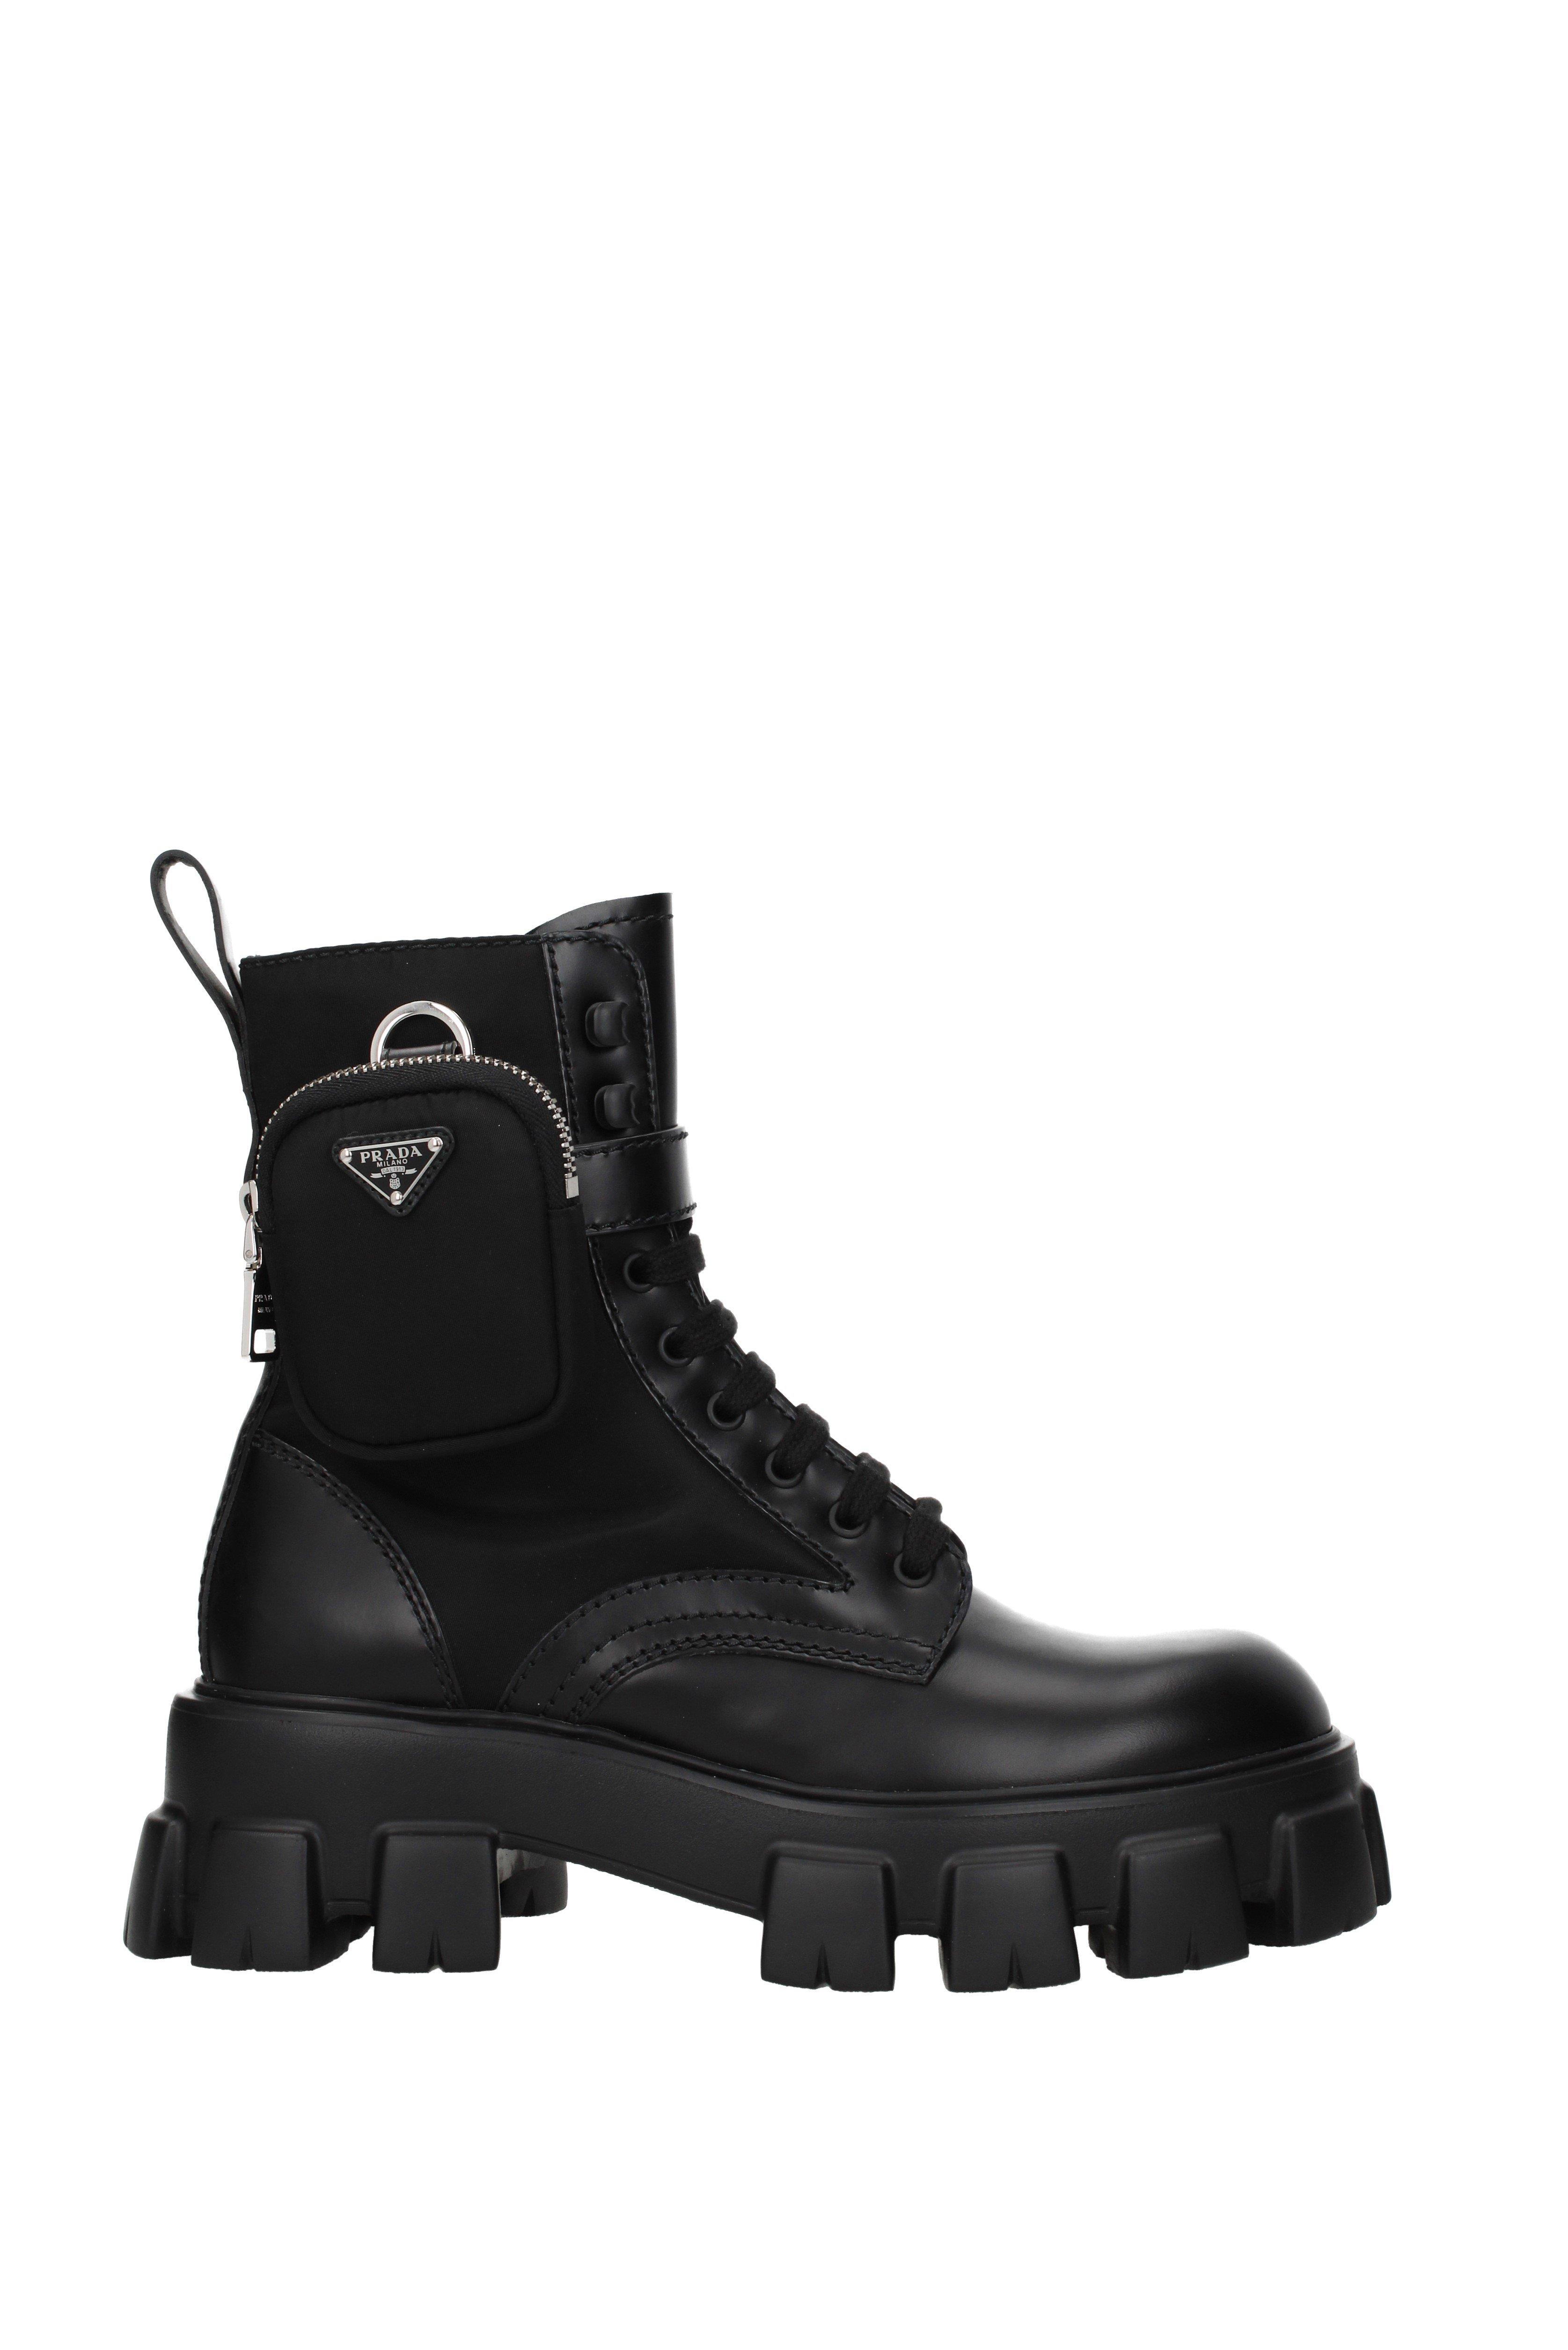 Prada Black Ankle Boot for Men - Lyst